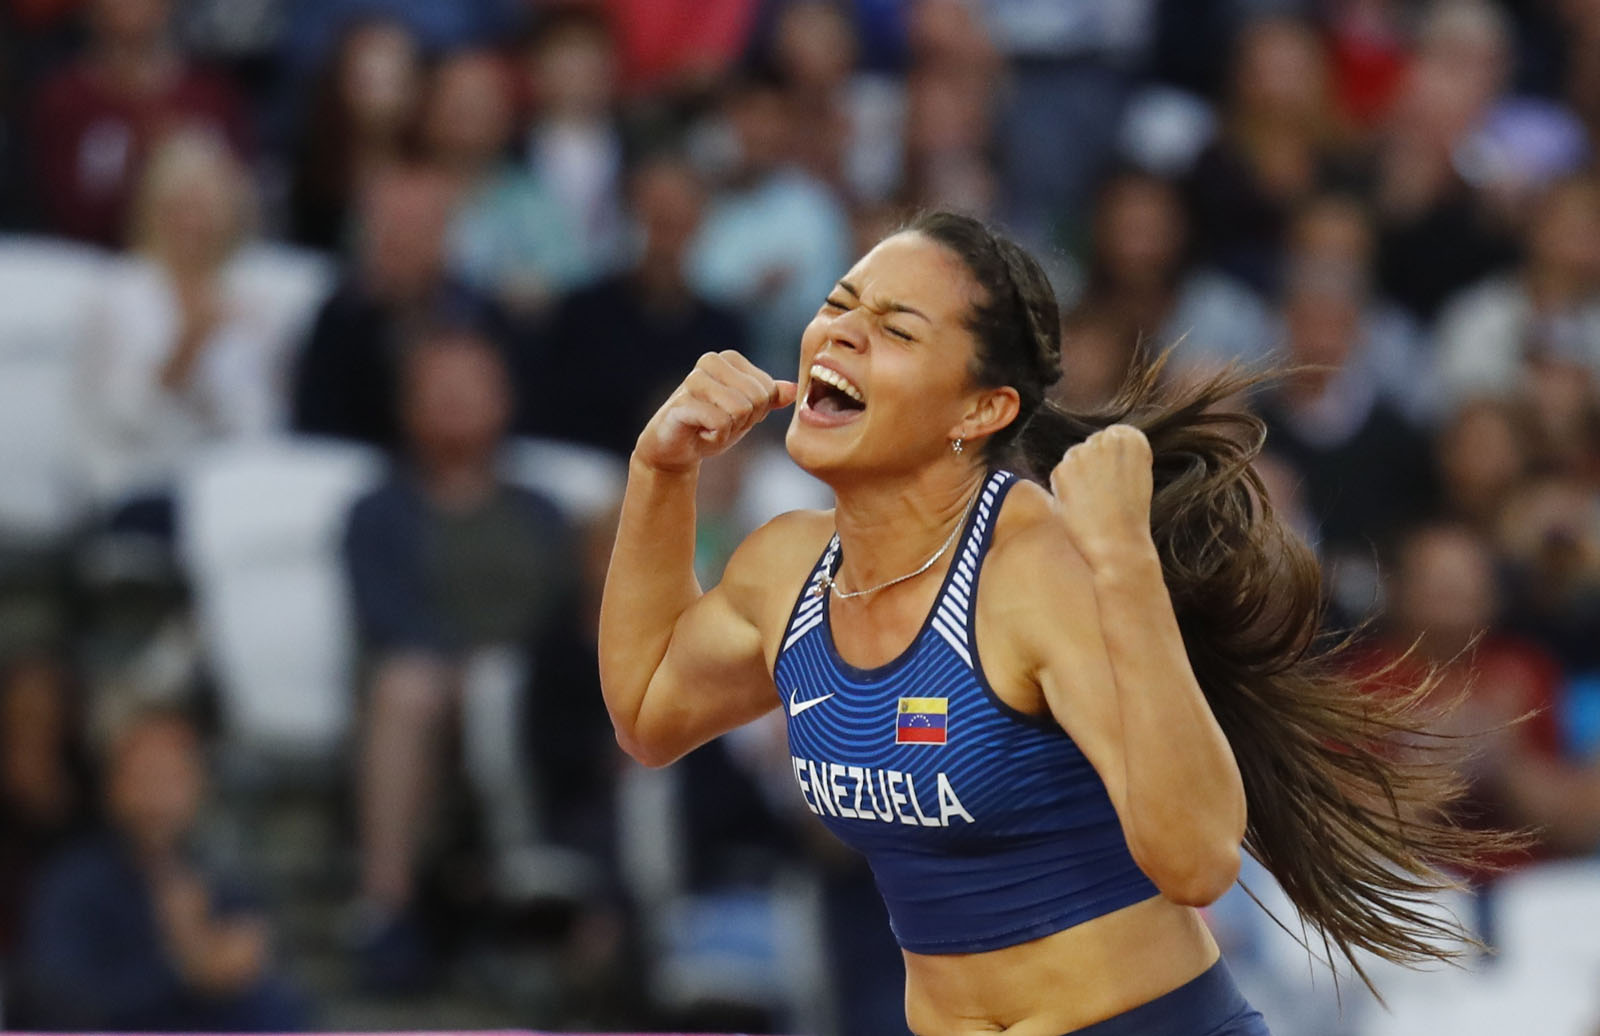 ¡Orgullo nacional! Robeilys Peinado se proclamó bicampeona en los Juegos Suramericanos (Video)